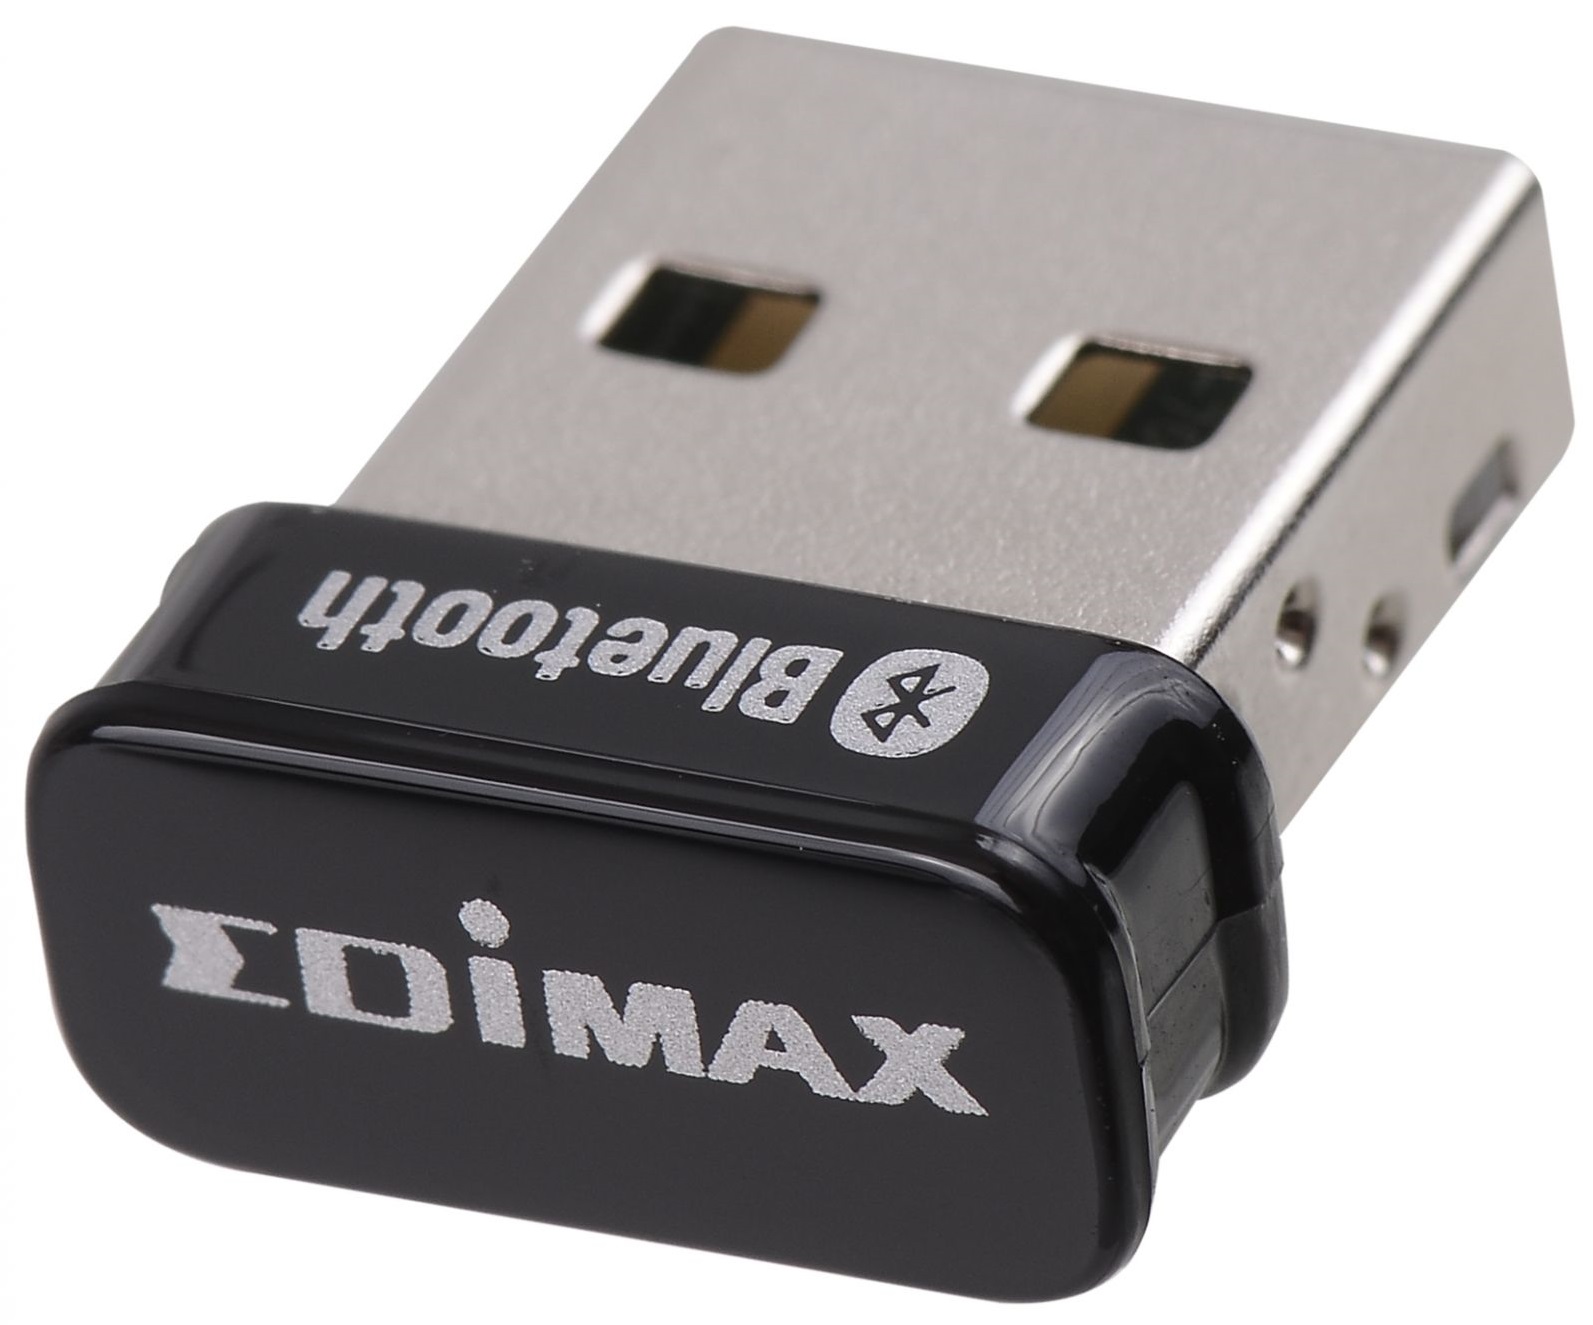 Адаптер Bluetooth EDIMAX BT-8500 5.0, nano в Києві